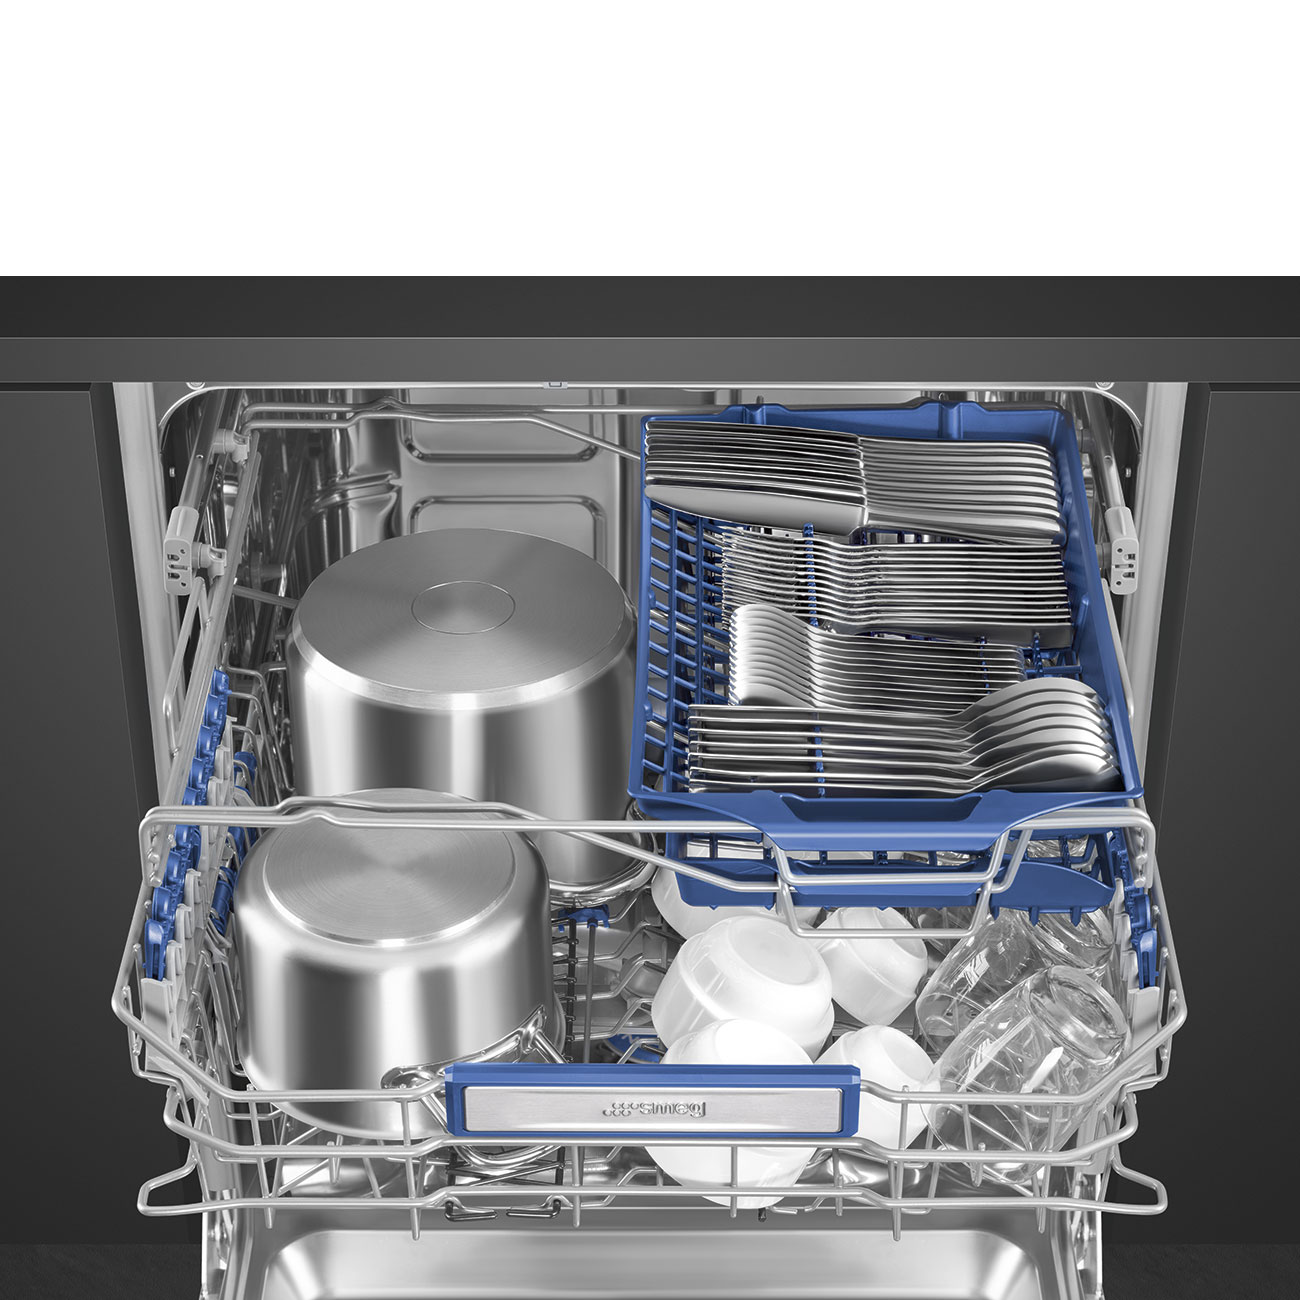 Посудомоечные машины 3 комплекта. Посудомоечная машина Smeg stl333cl. Посудомоечная машина Smeg stl323bl. Встраиваемая посудомоечная машина Smeg stl323bqlh. Посудомоечная машина Smeg sta4503.